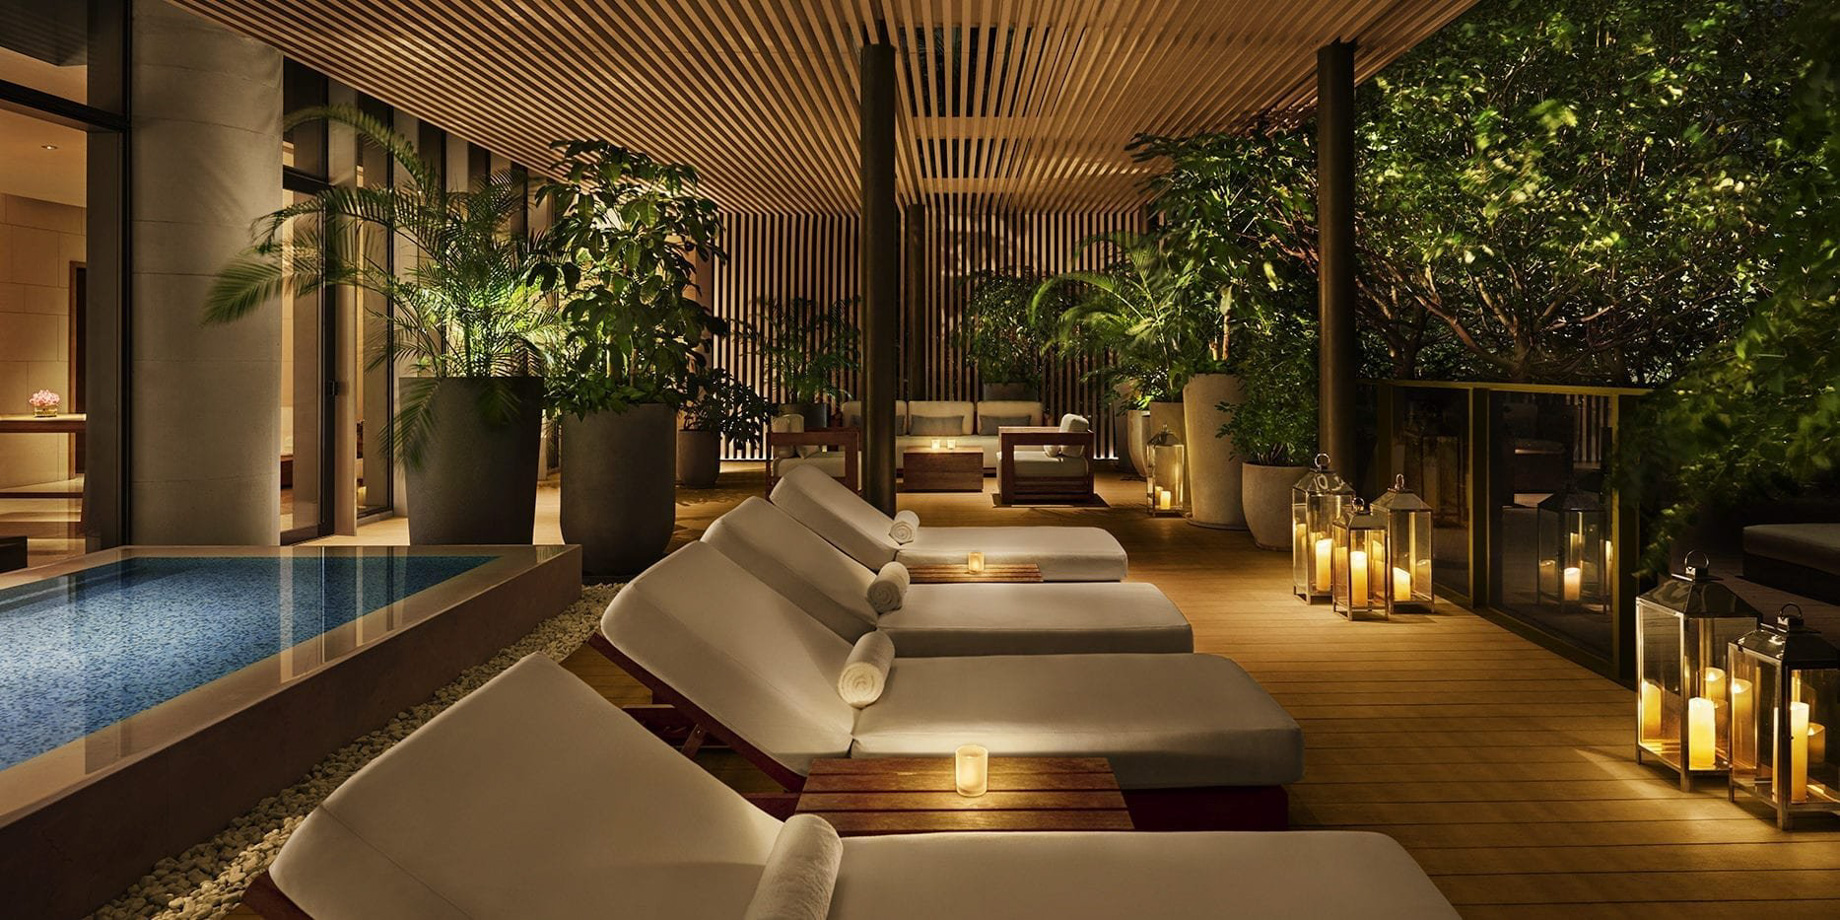 The Sanya EDITION Hotel – Sanya, Hainan, China – Spa Deck